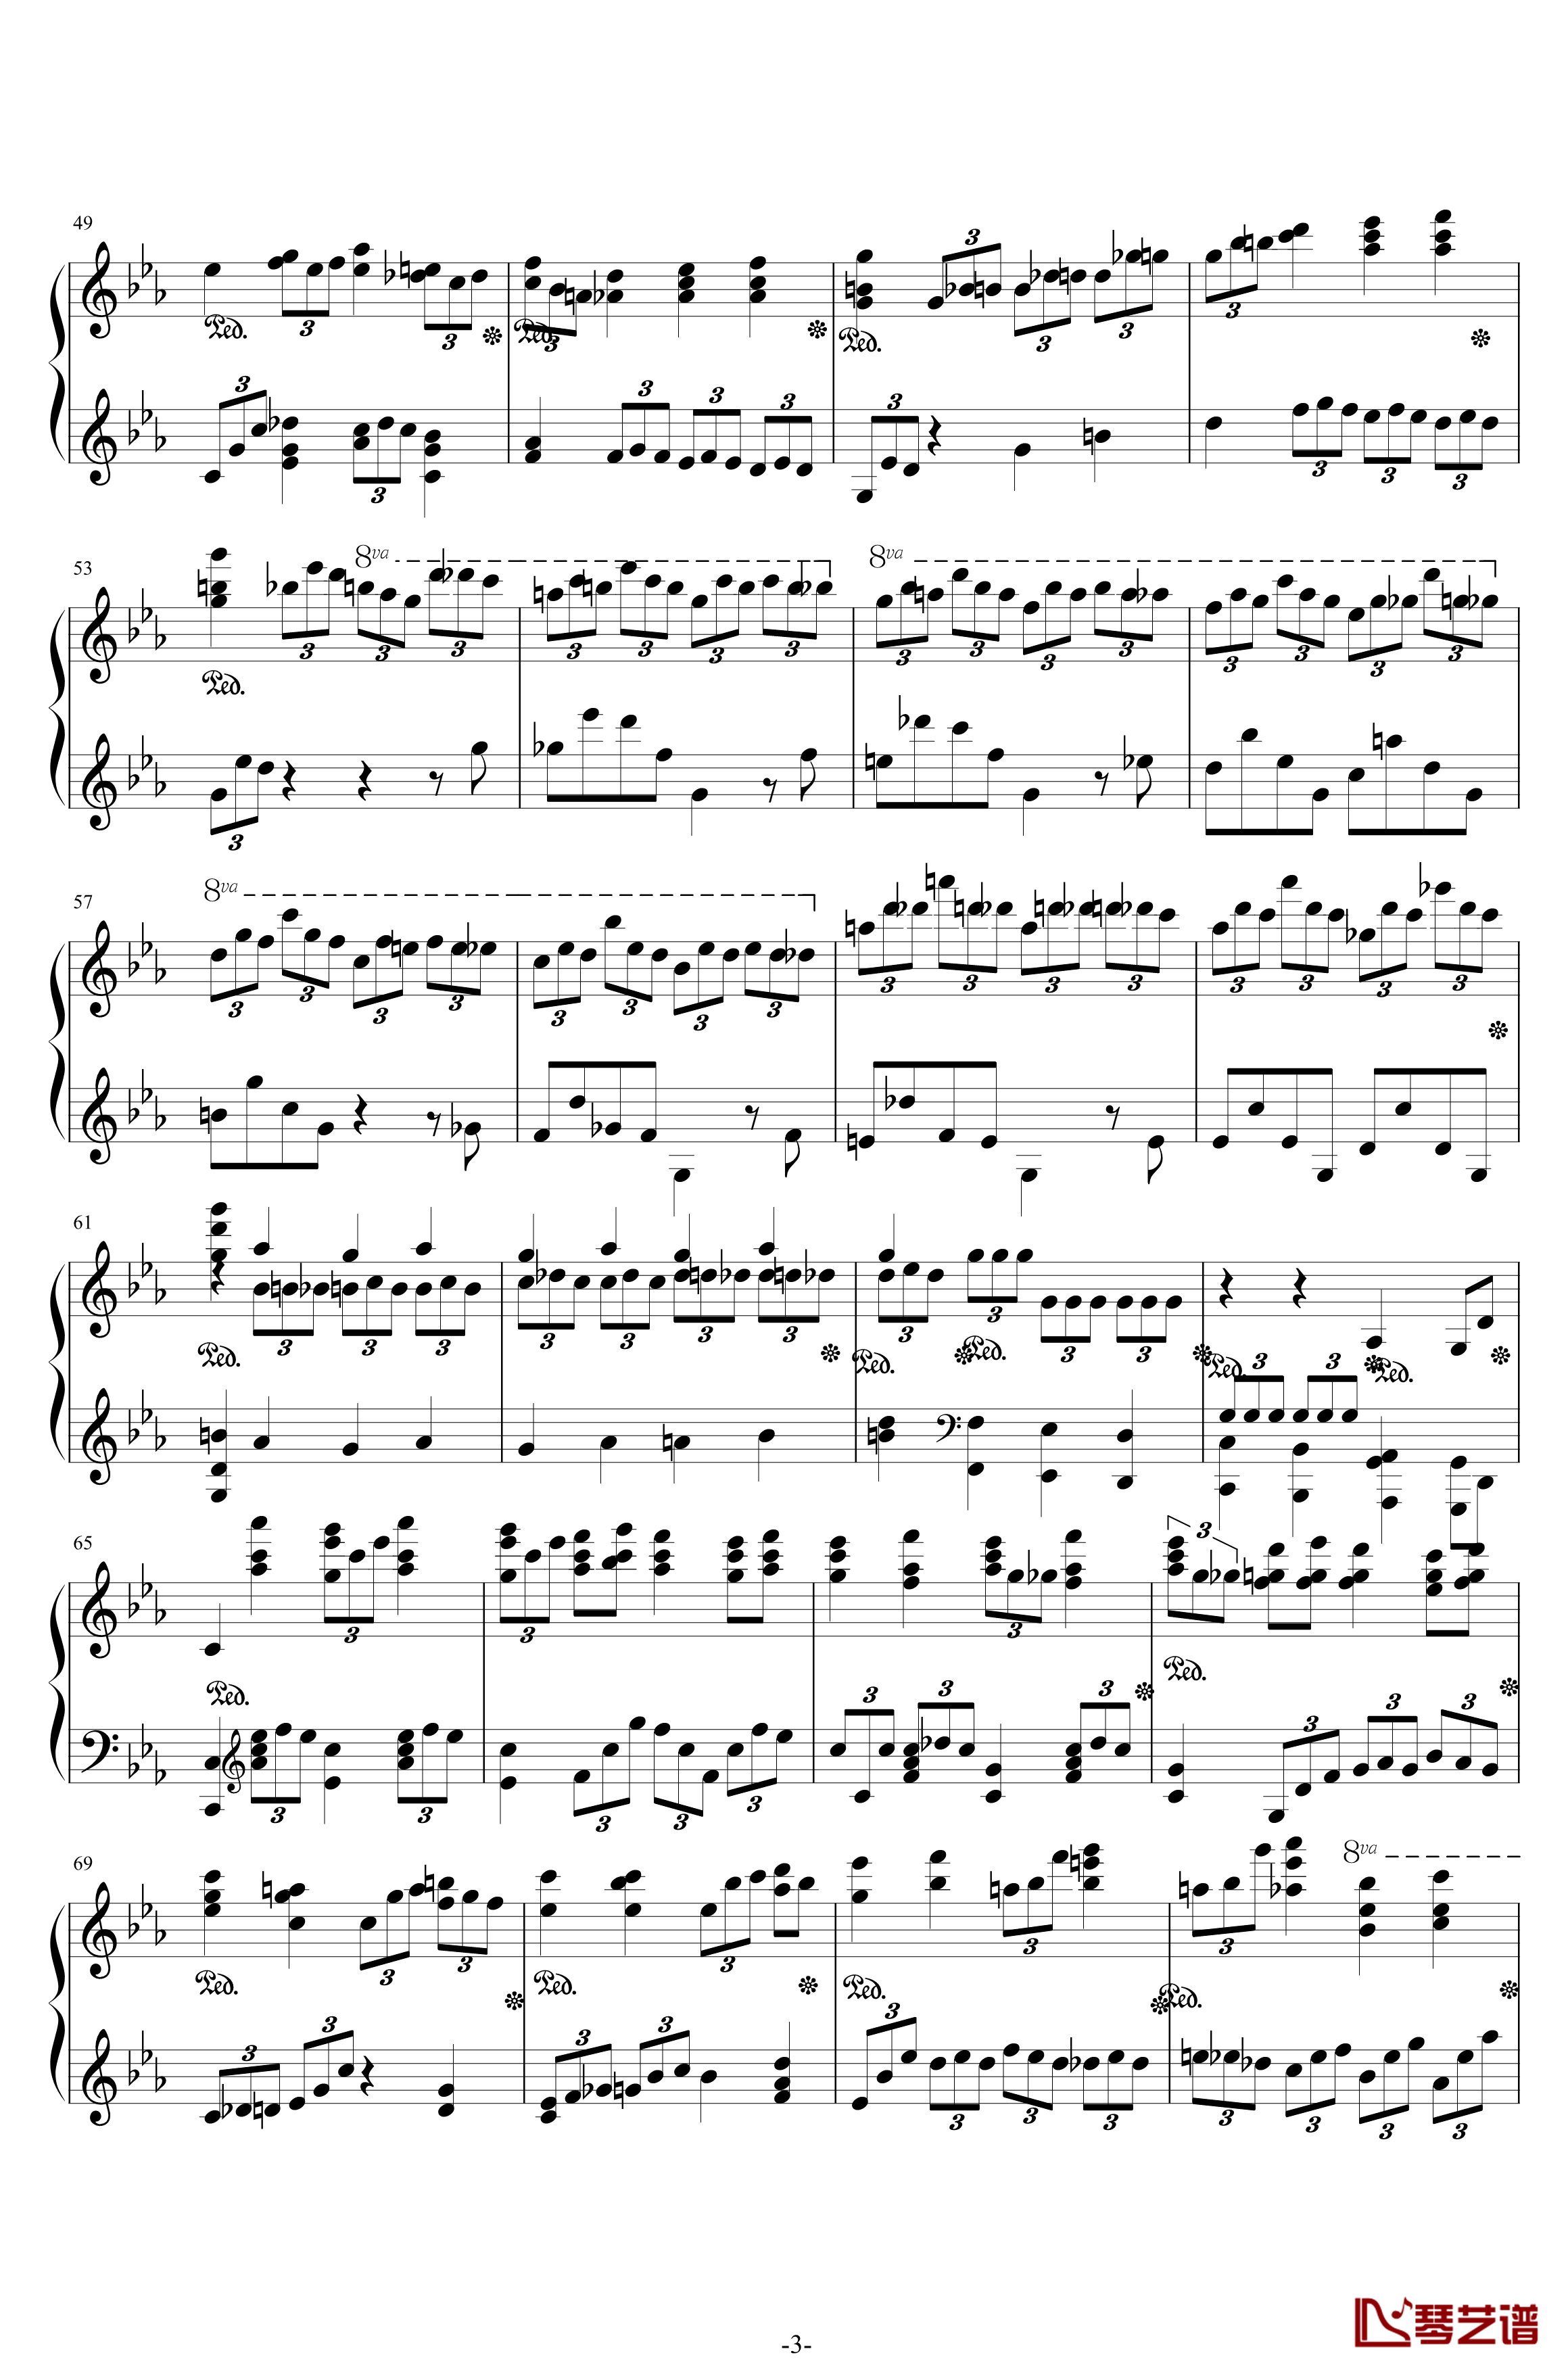 第二钢琴协奏曲钢琴谱--第三乐章独奏版-拉赫马尼若夫-c小调3